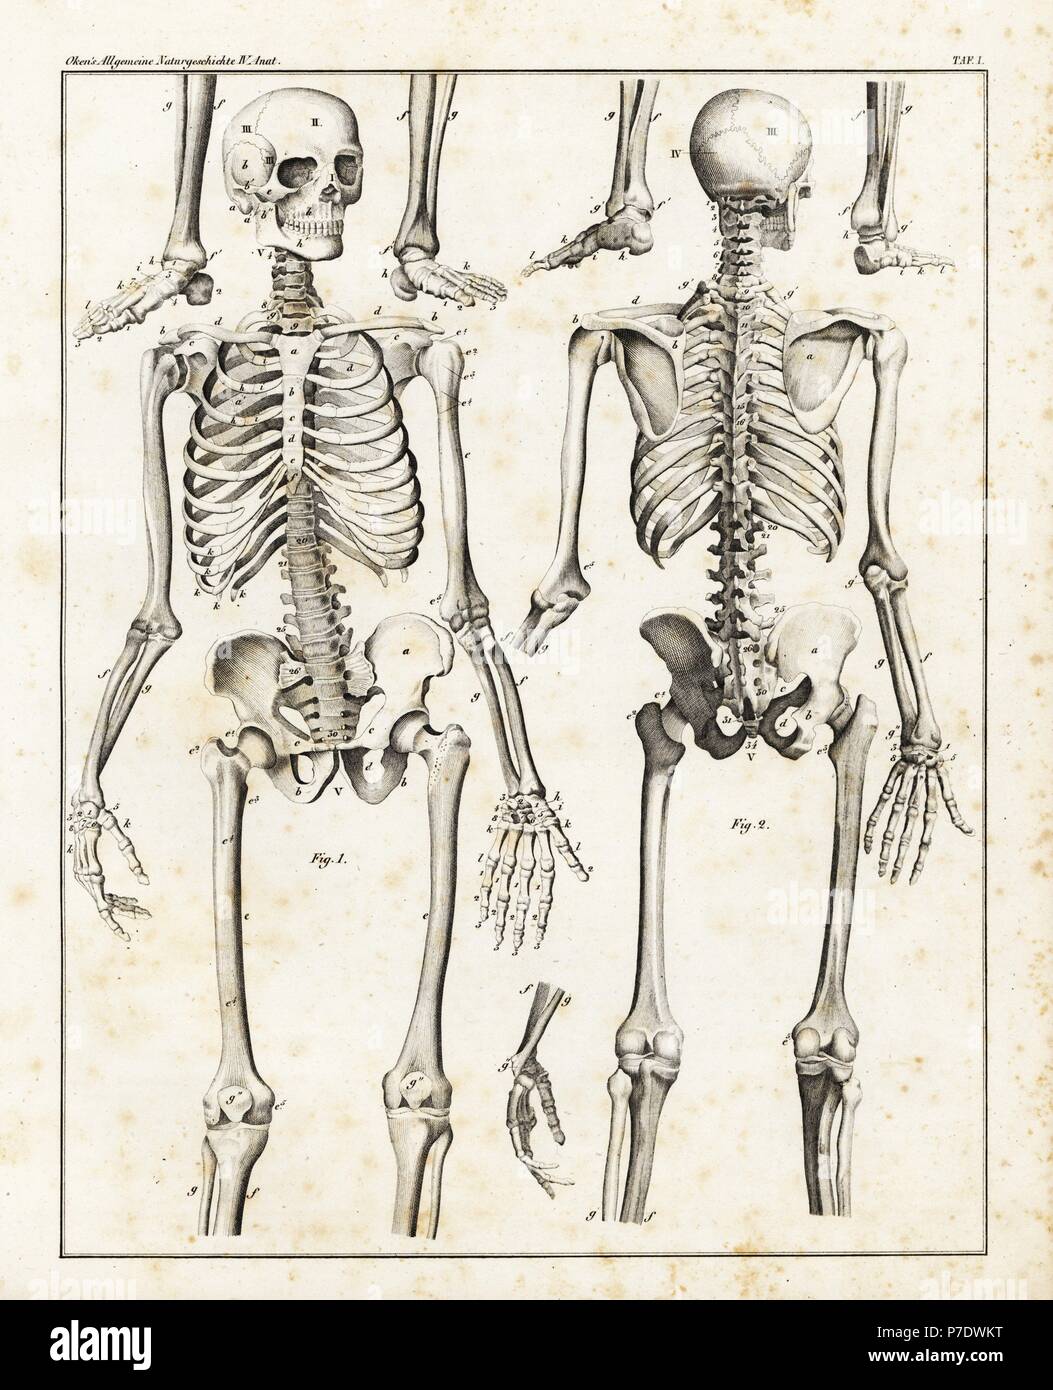 Anatomy of the human skeleton. Lithograph from Lorenz Oken's Universal Natural History, Allgemeine Naturgeschichte fur alle Stande, Stuttgart, 1839. Stock Photo